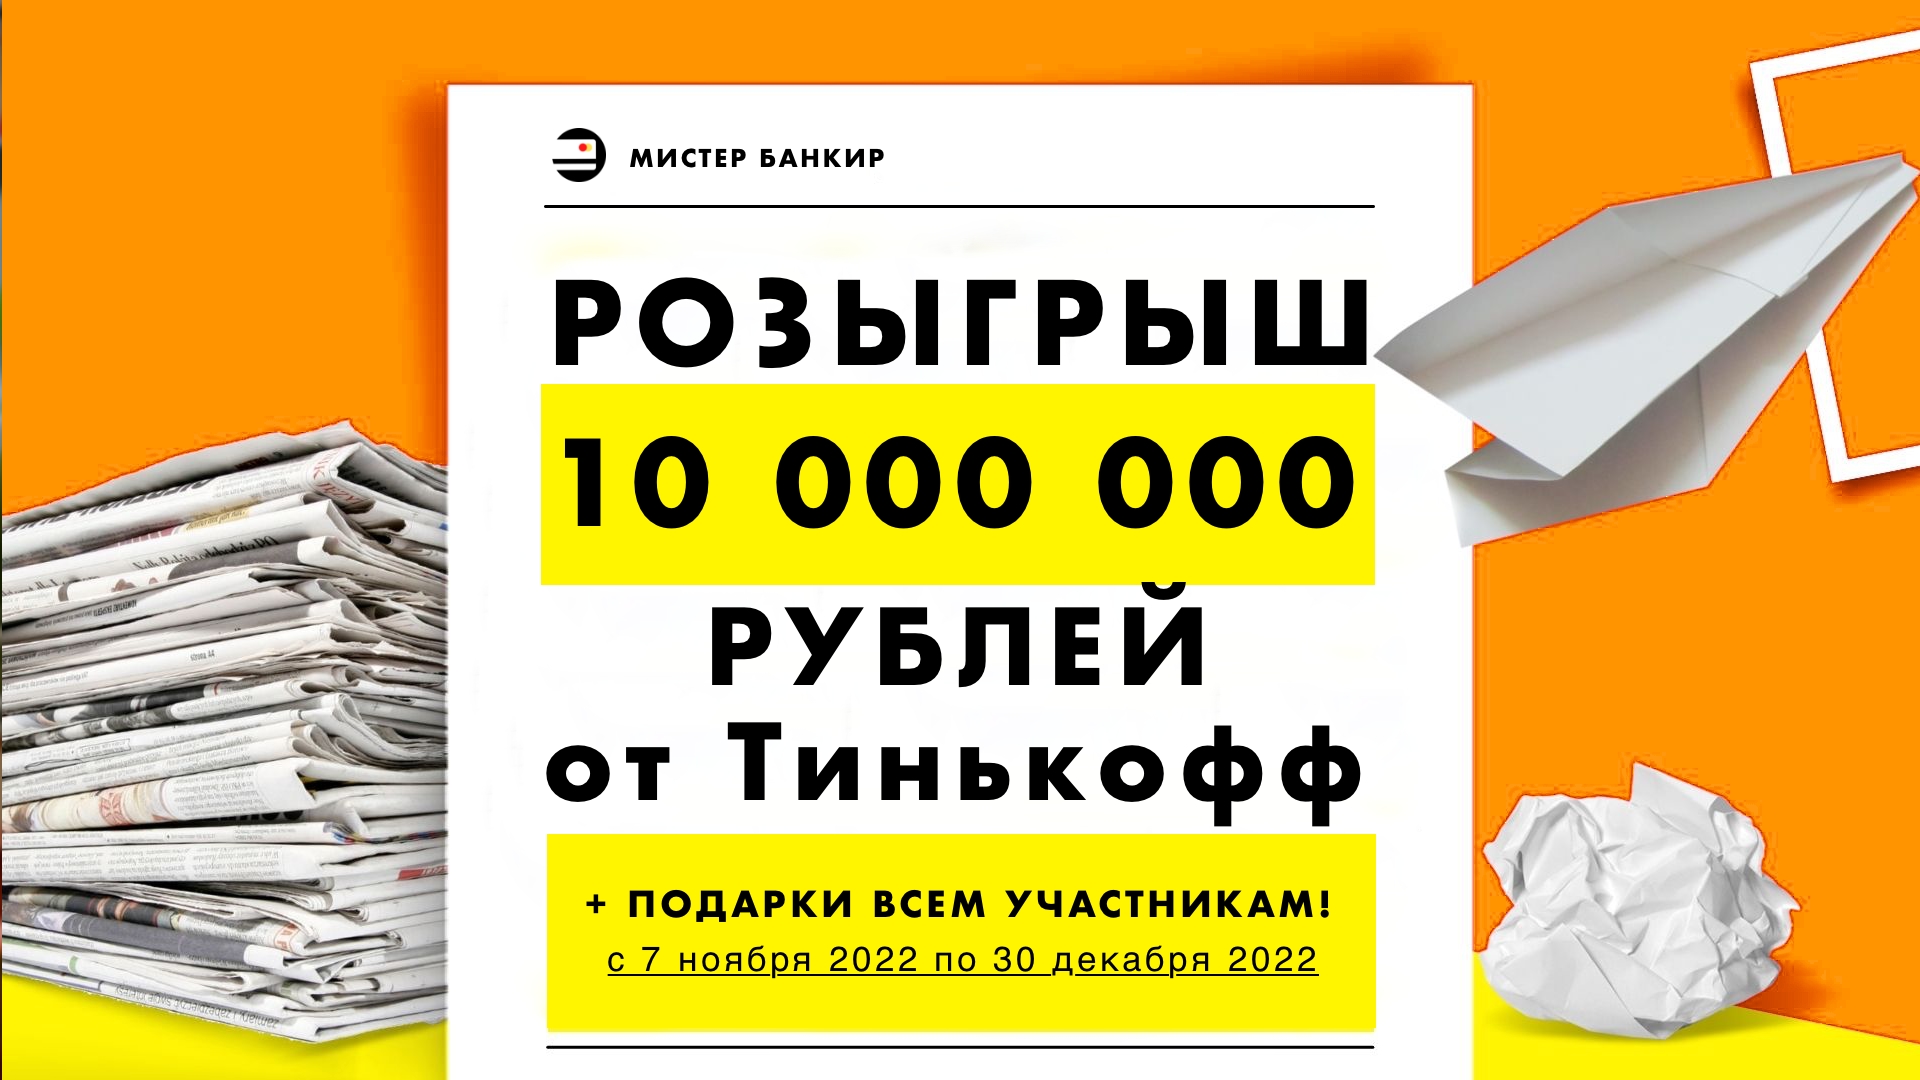 Тинькофф Розыгрыш 2022 ПРИЗ 10 миллионов (10000000 рублей)